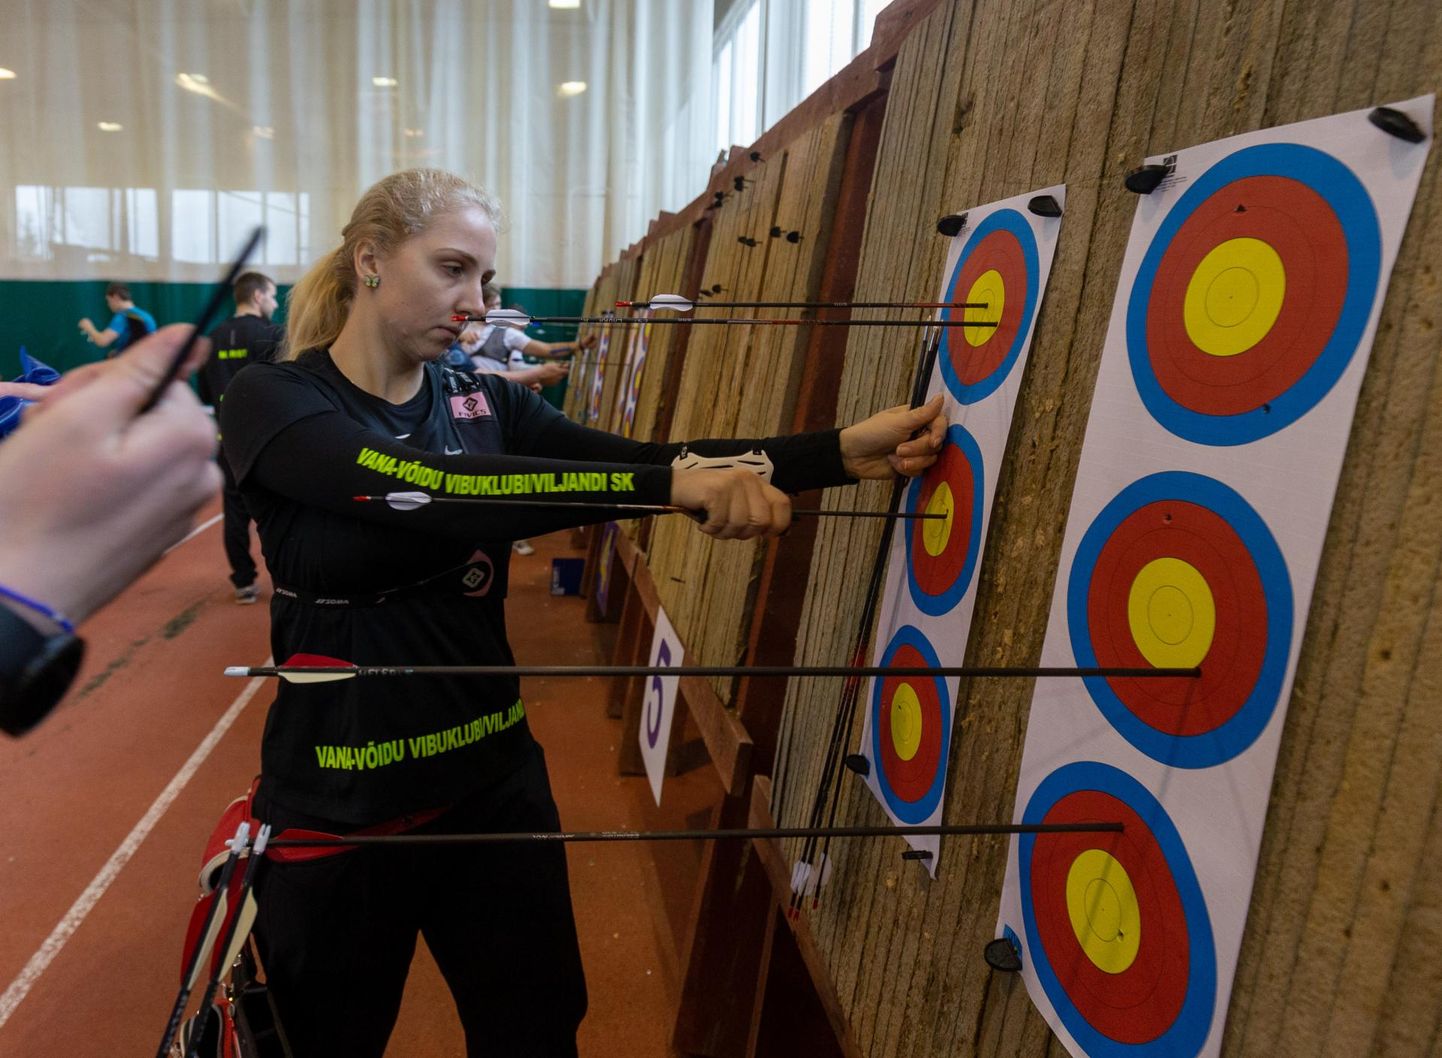 Viljandi vibusportlane Laura Nurmsalu noppis möödunud nädalal olümpiaringi harjutuses Eesti meistrivõistlustelt kaks meistritiitlit. Kokku teenisid kohalikud vibulaskjad neli meistritiitlit.